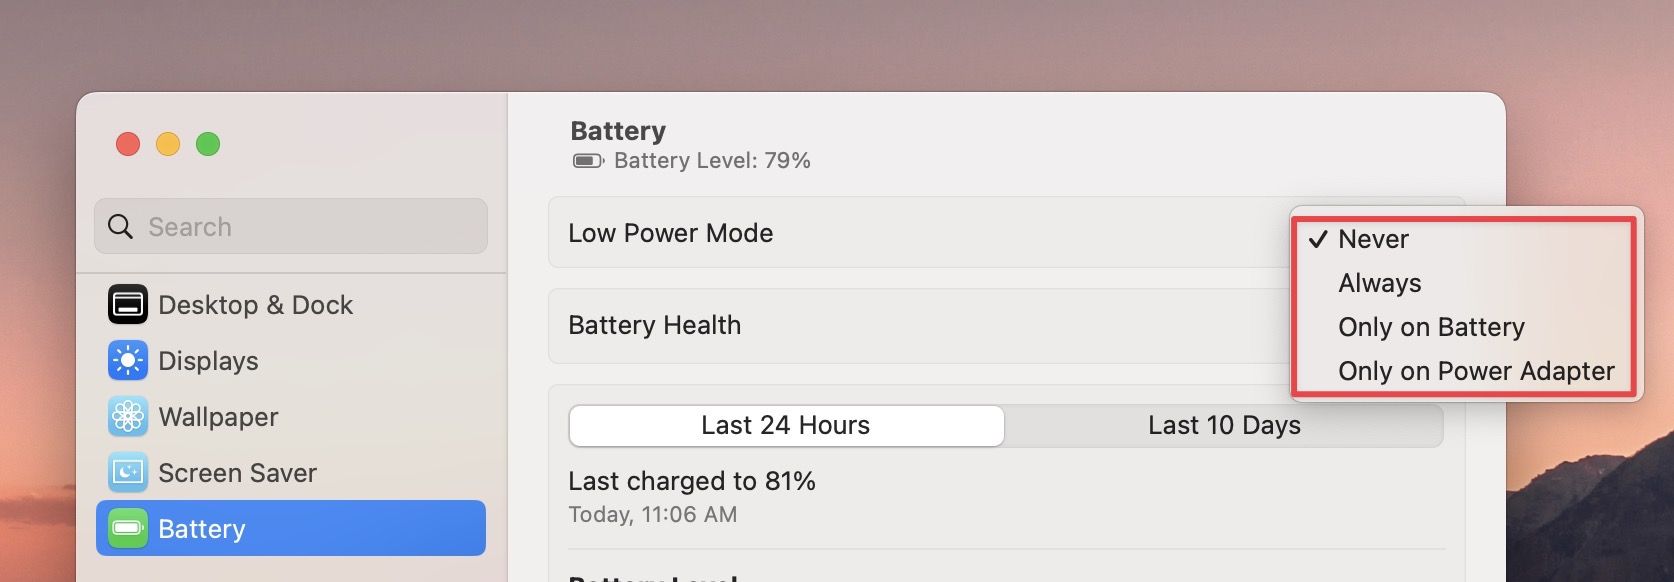 enable Low Power Mode on Mac in macOS Ventura 2